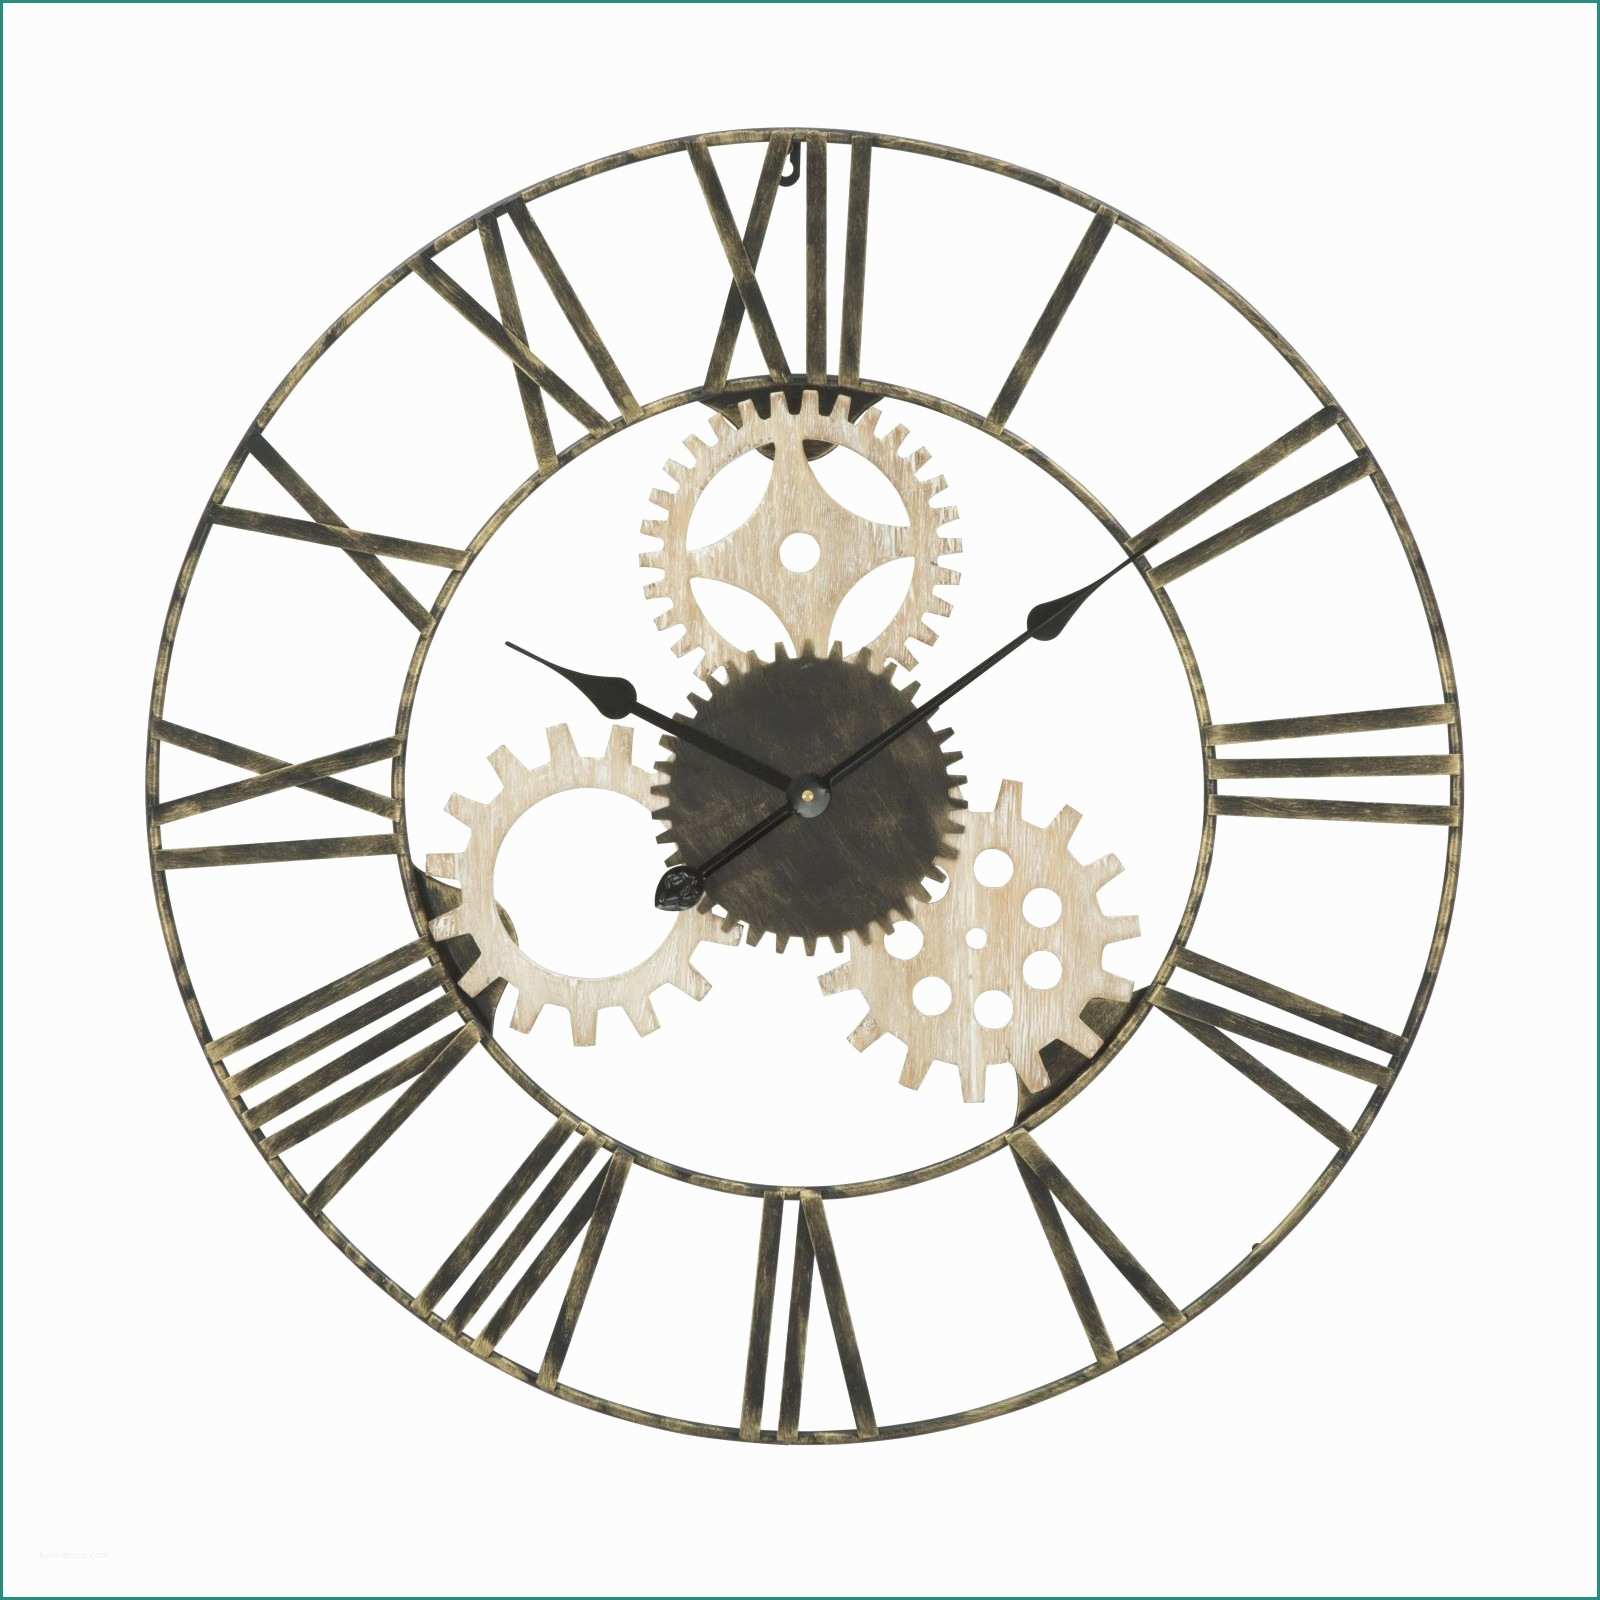 Meccanismo orologio Leroy Merlin E Ingranaggi orologio Da Parete Splendido orologio Da Parete Muro Con